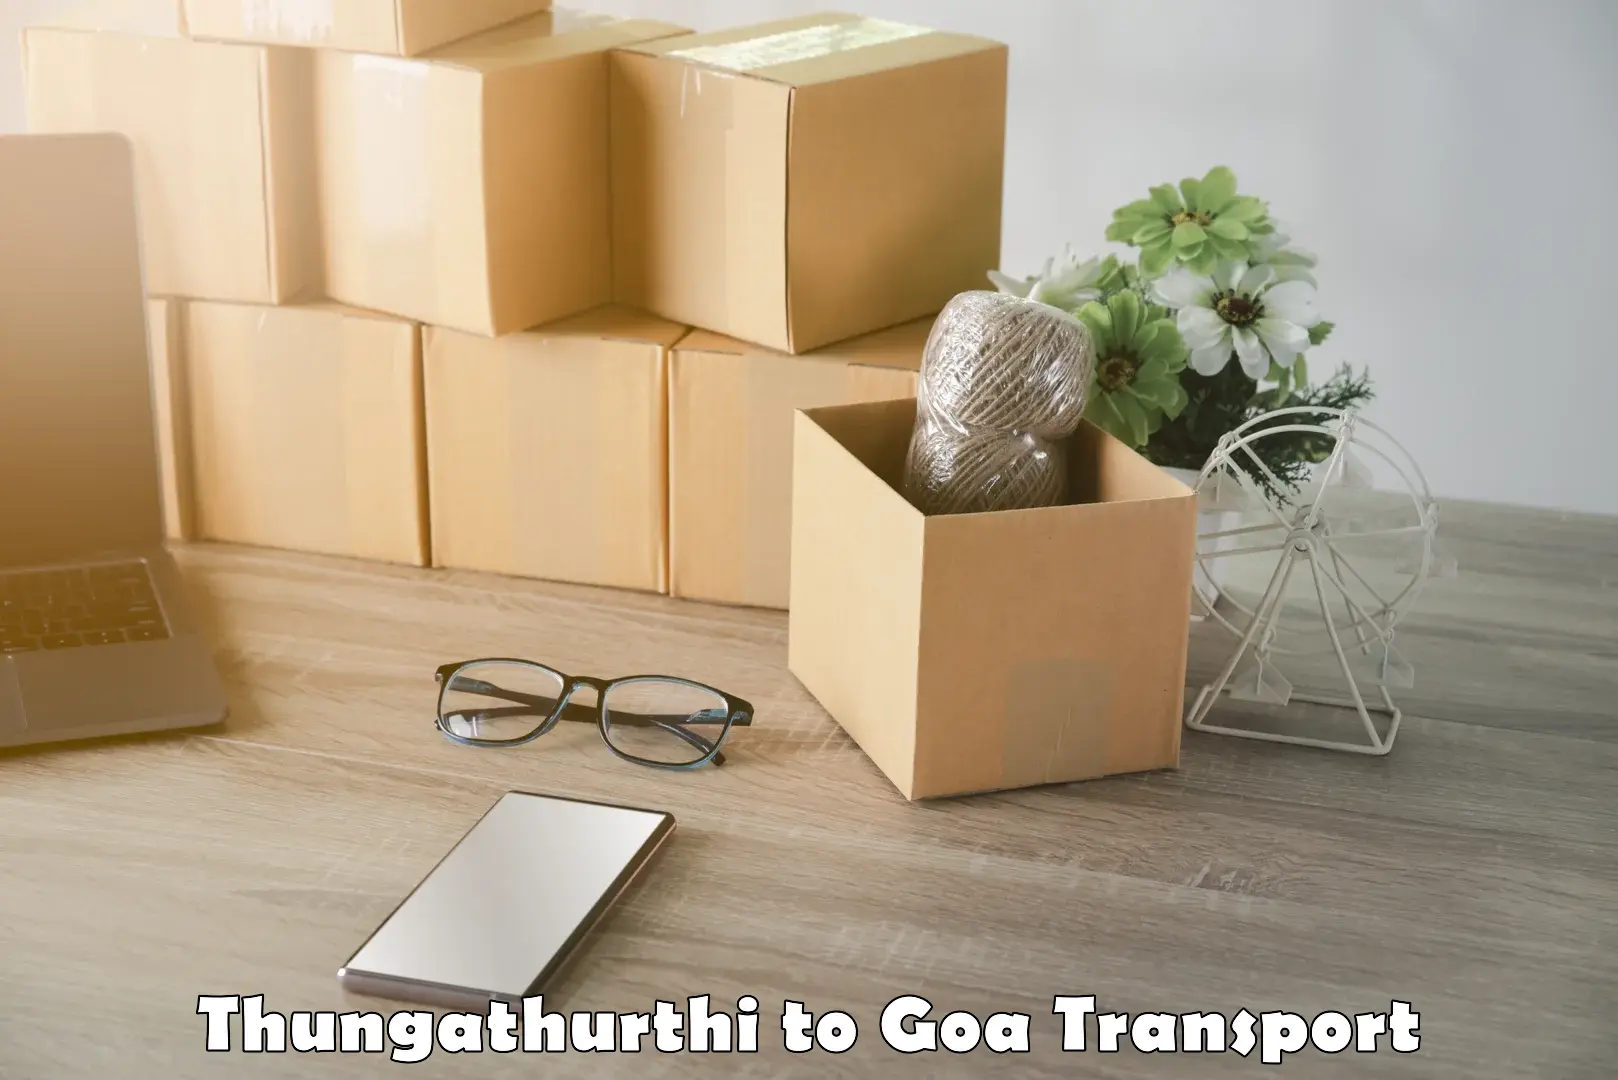 Daily transport service Thungathurthi to Ponda